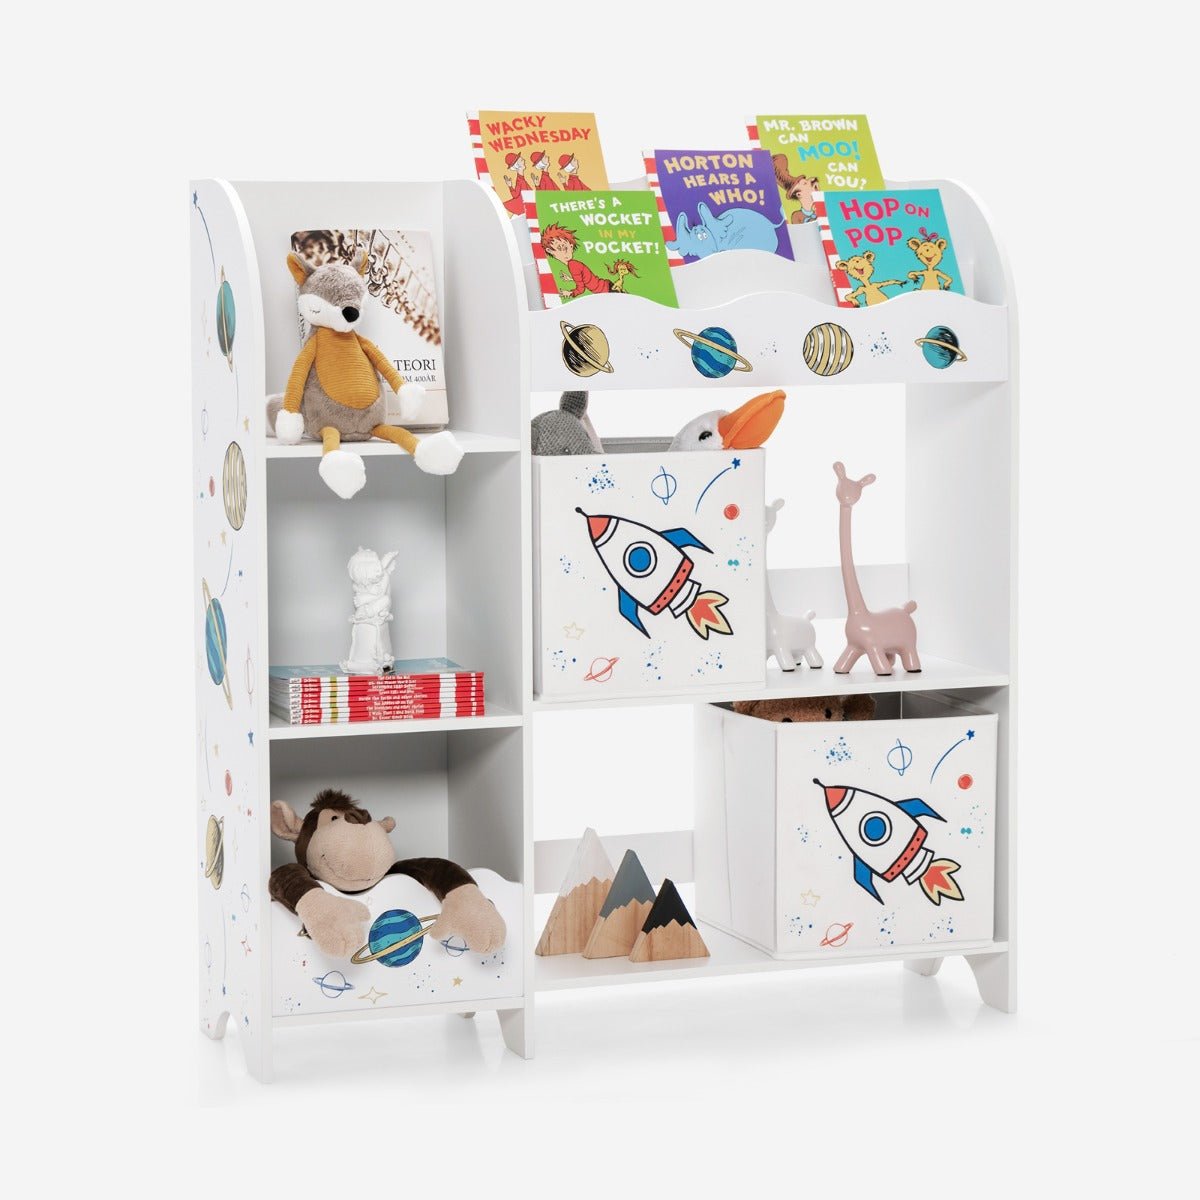 Toy Storage Bookshelf with Display Rack and Storage Shelf - Organized Kids Play